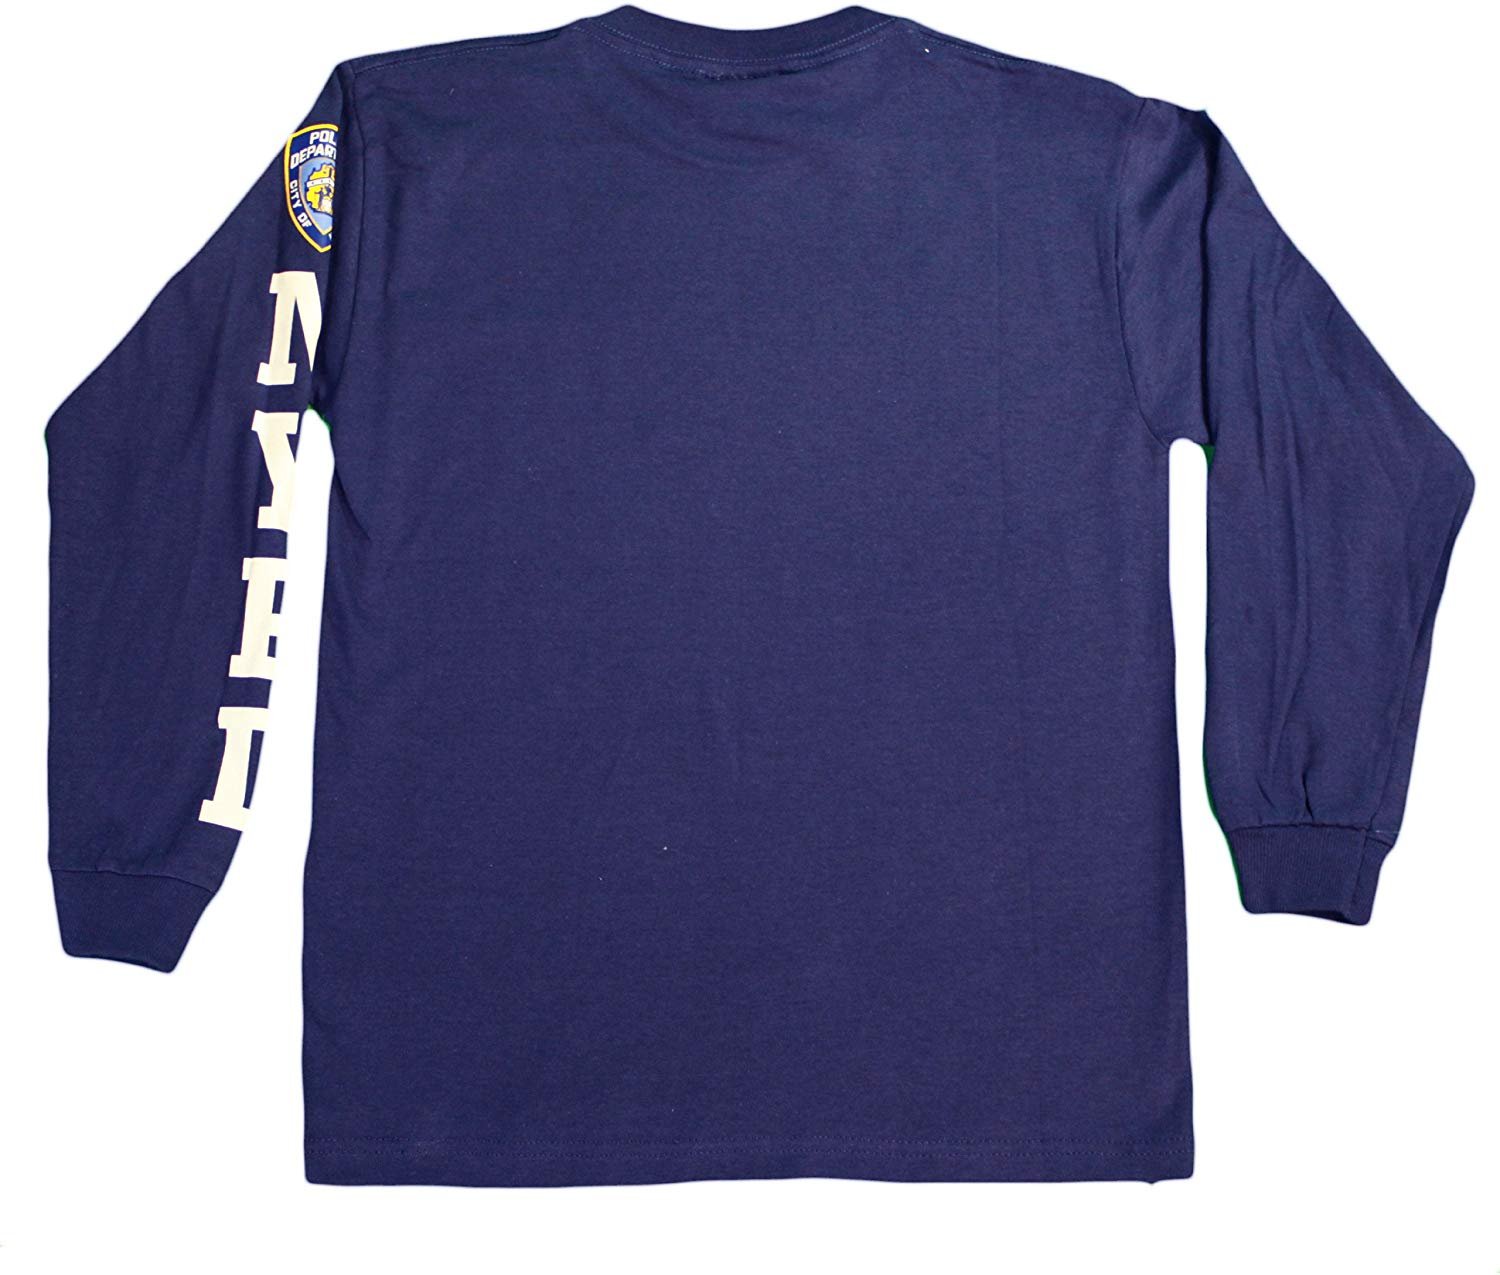 NYPD Langarm-T-Shirt mit Siebdruck auf der Brust für Kinder, Marineblau